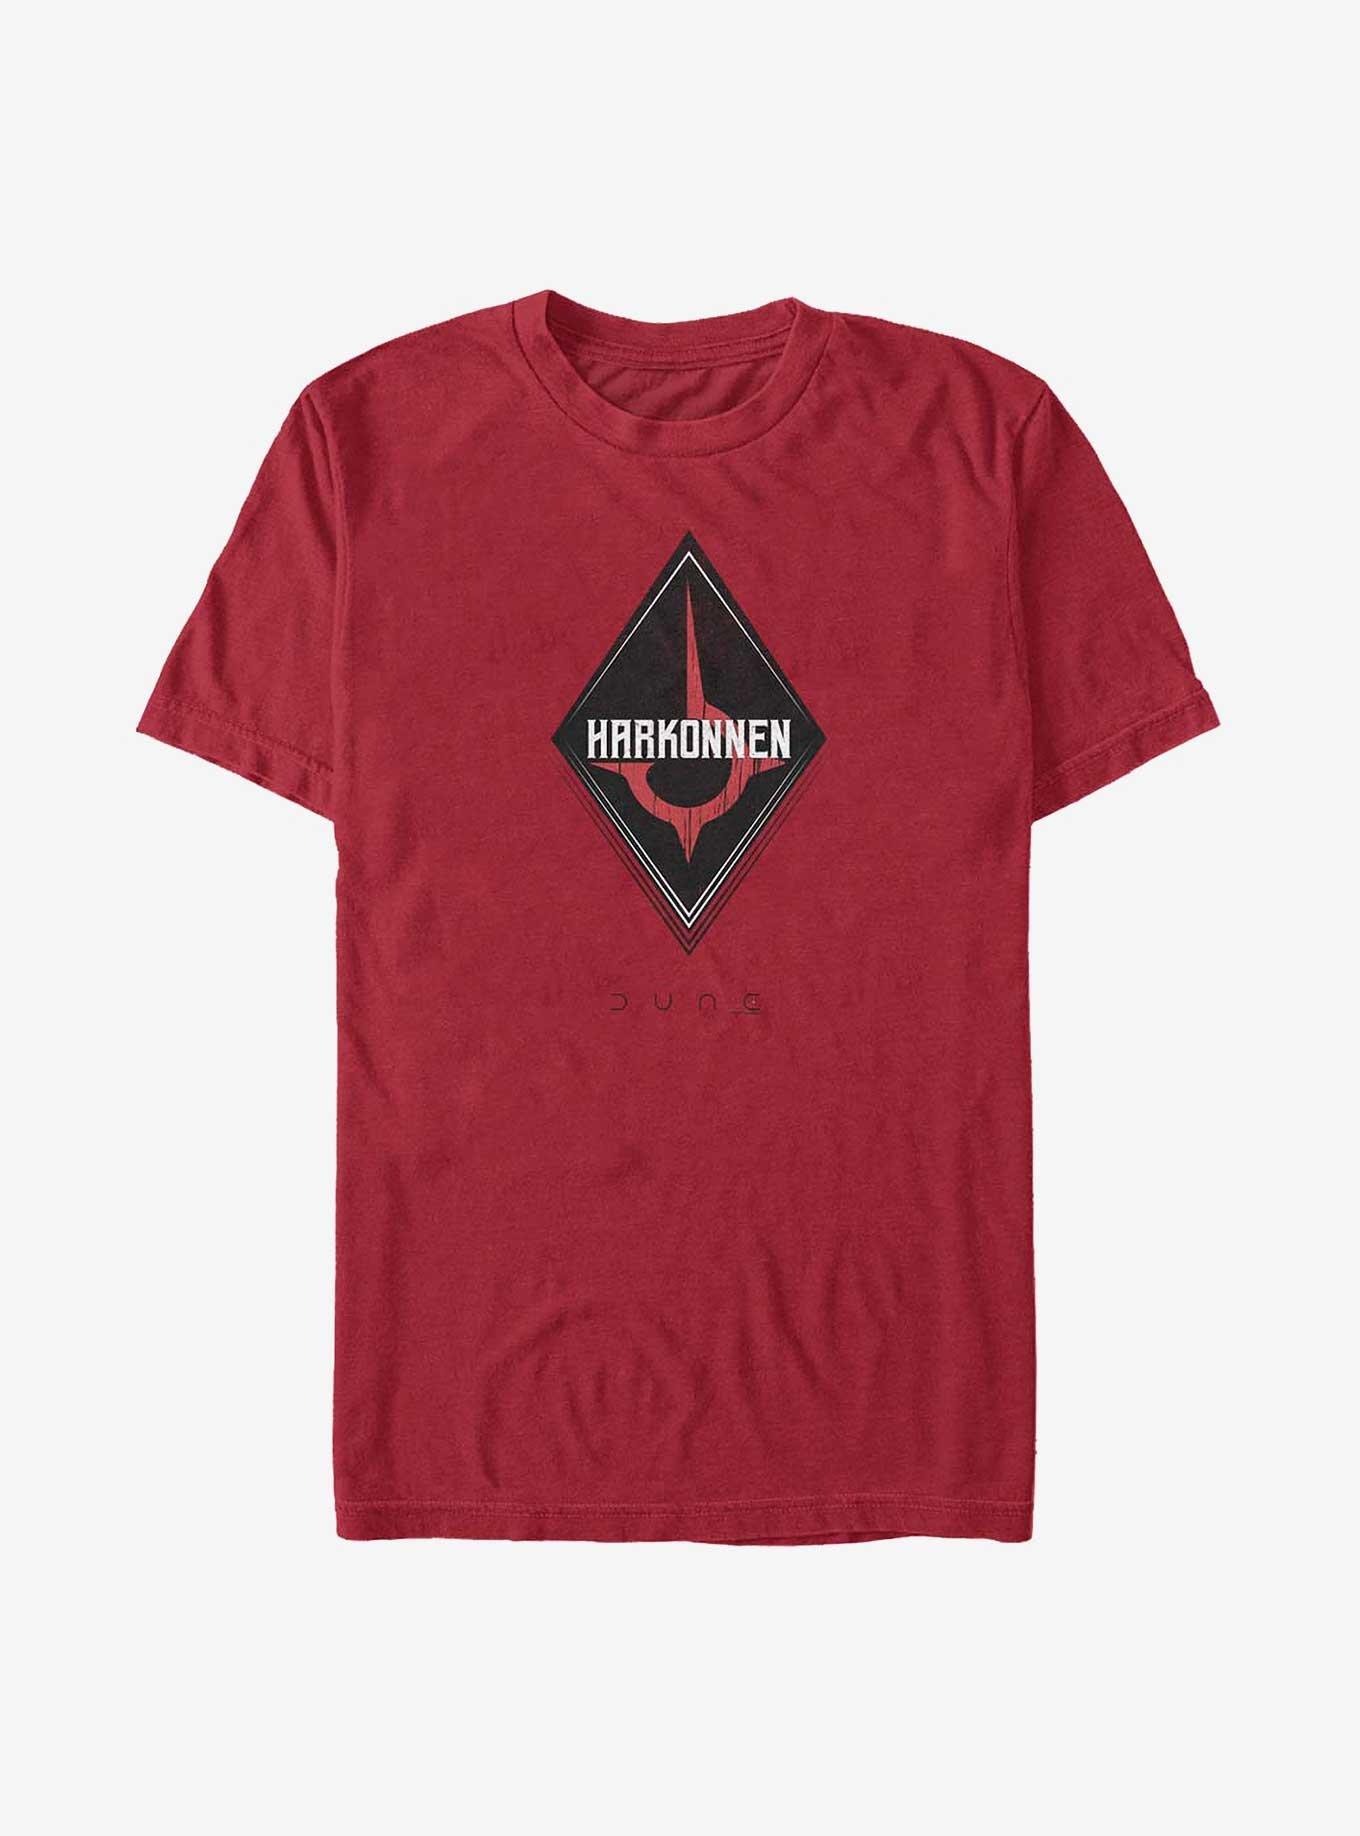 Dune Harkonnen Emblem T-Shirt, CARDINAL, hi-res